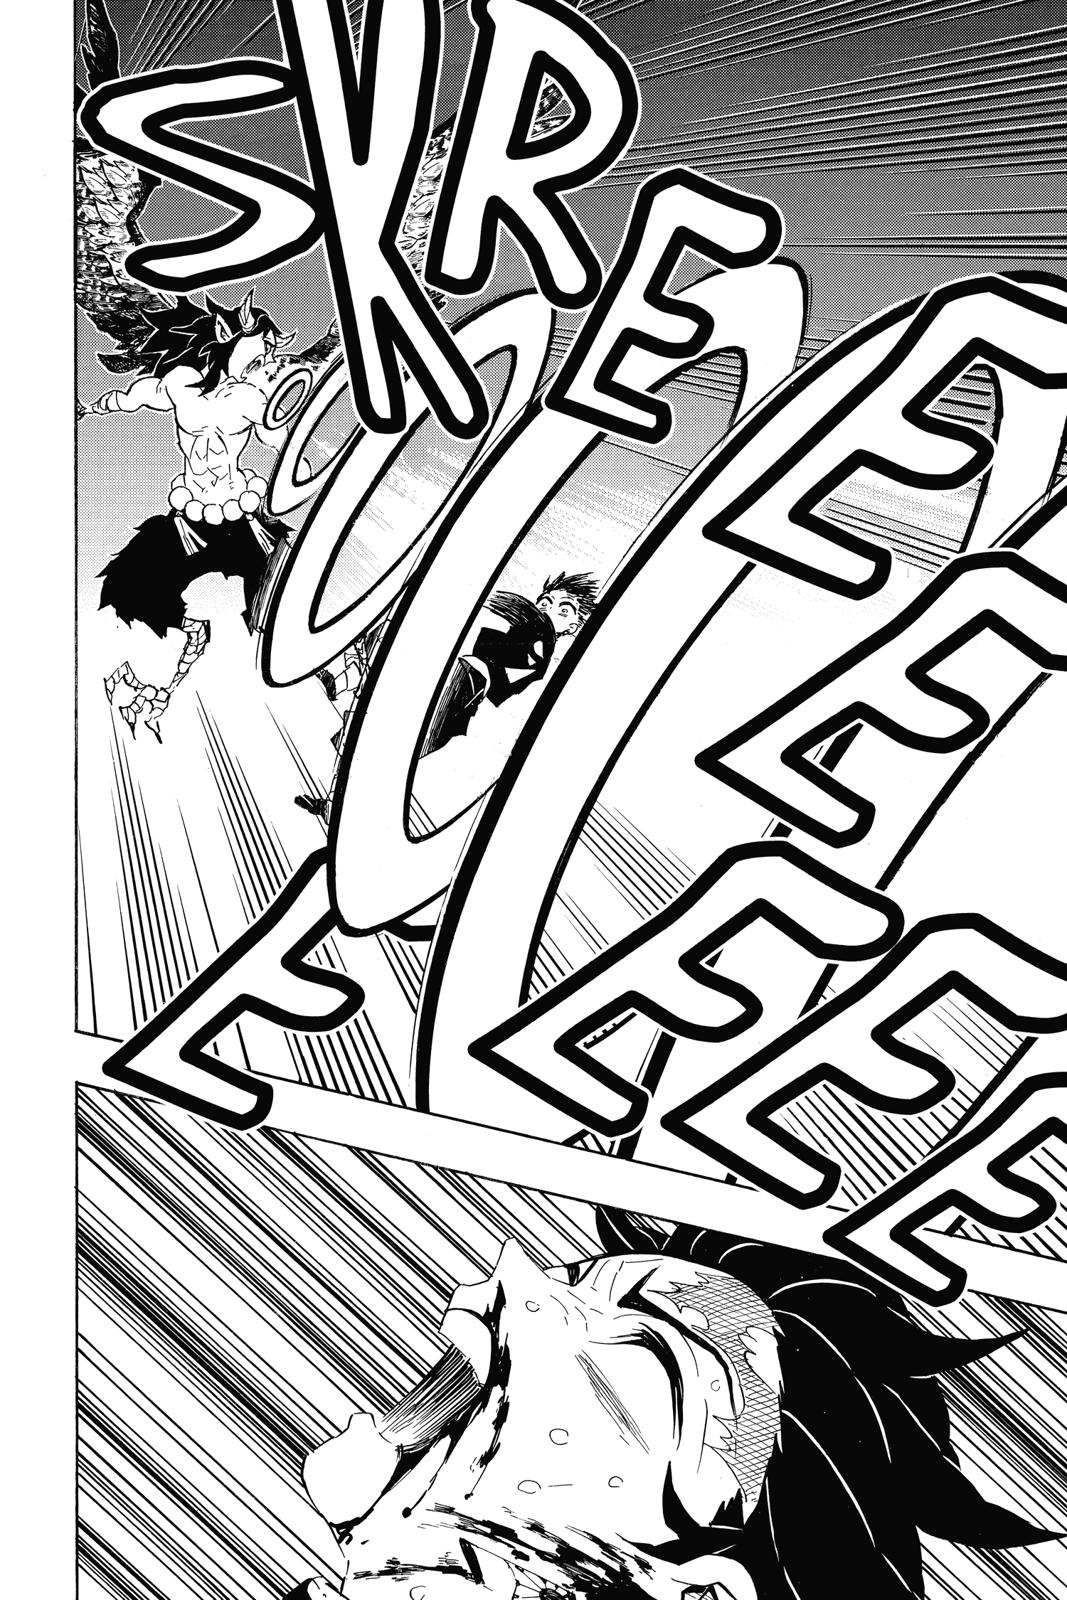 Demon Slayer Manga Manga Chapter - 107 - image 15